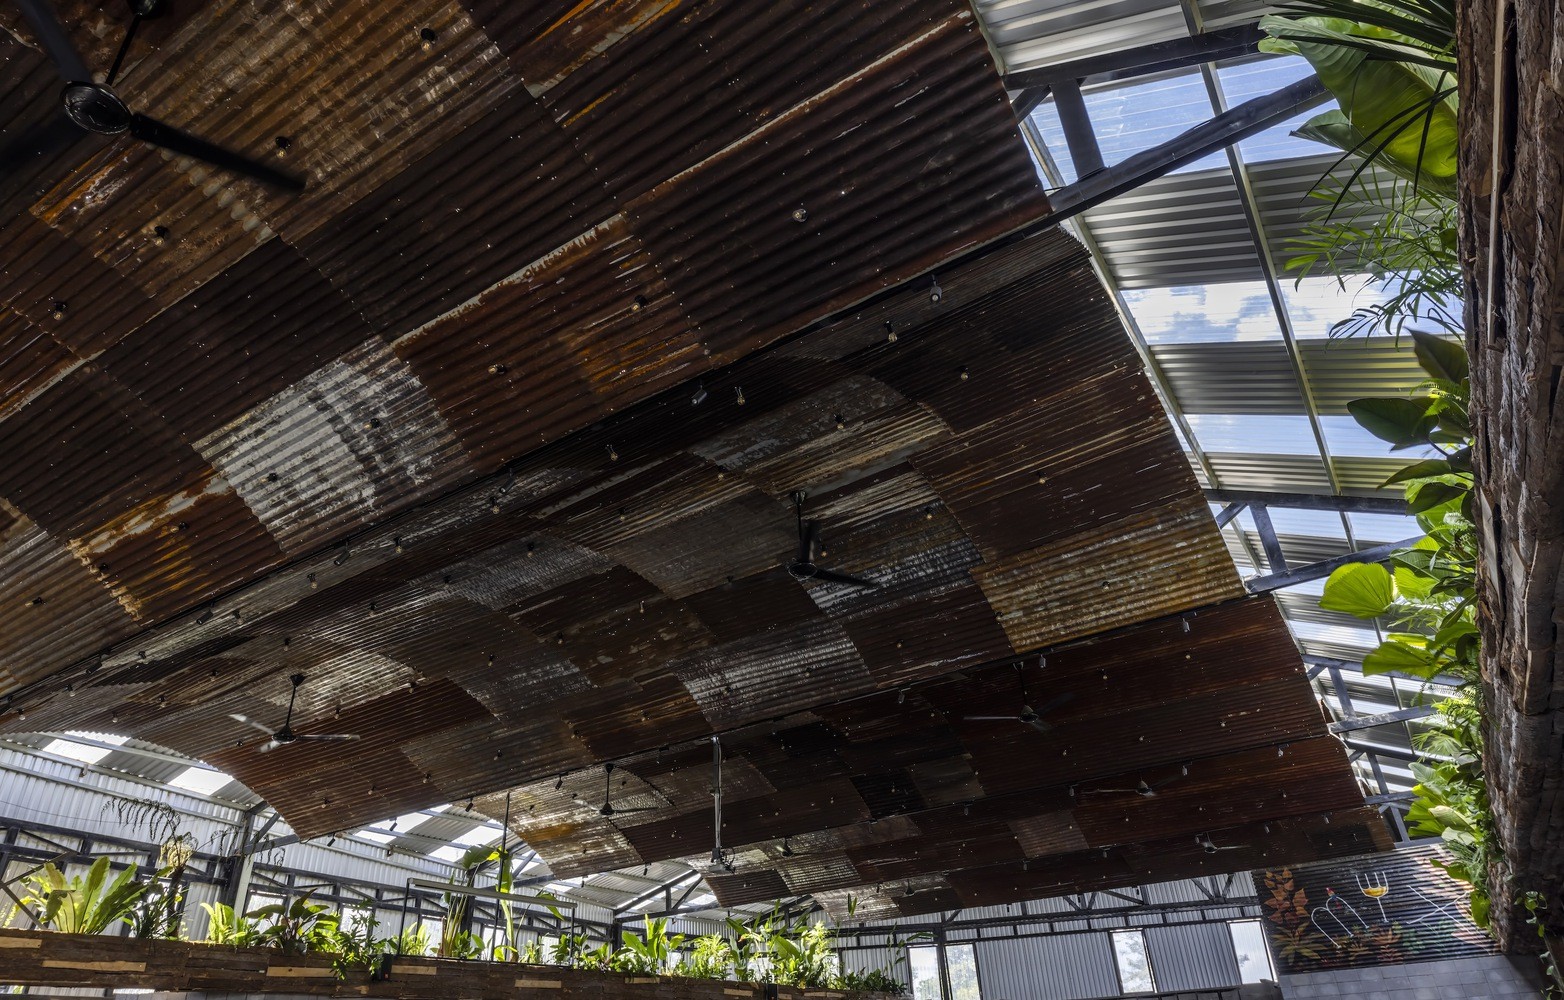 Chiêm ngưỡng nhà hàng dùng nghìn thanh gỗ làm mái được báo nước ngoài đưa tin - Ảnh 17.